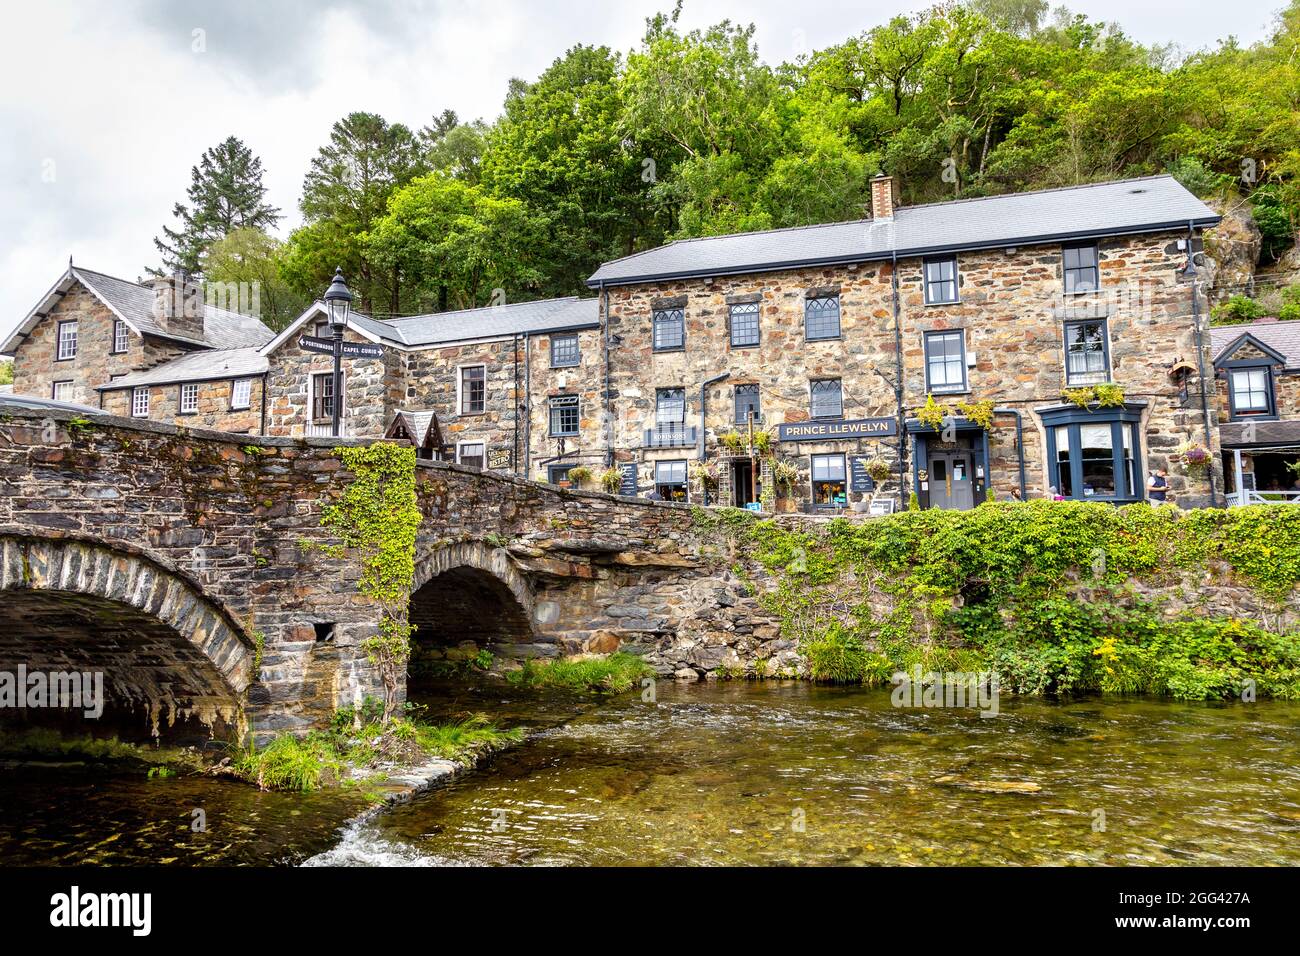 Puente sobre el río Colwyn y el pub Prince Llewelyn en el pueblo de Beddgelert en Gwynedd, Parque Nacional de Snowdonia, Gales, Reino Unido Foto de stock